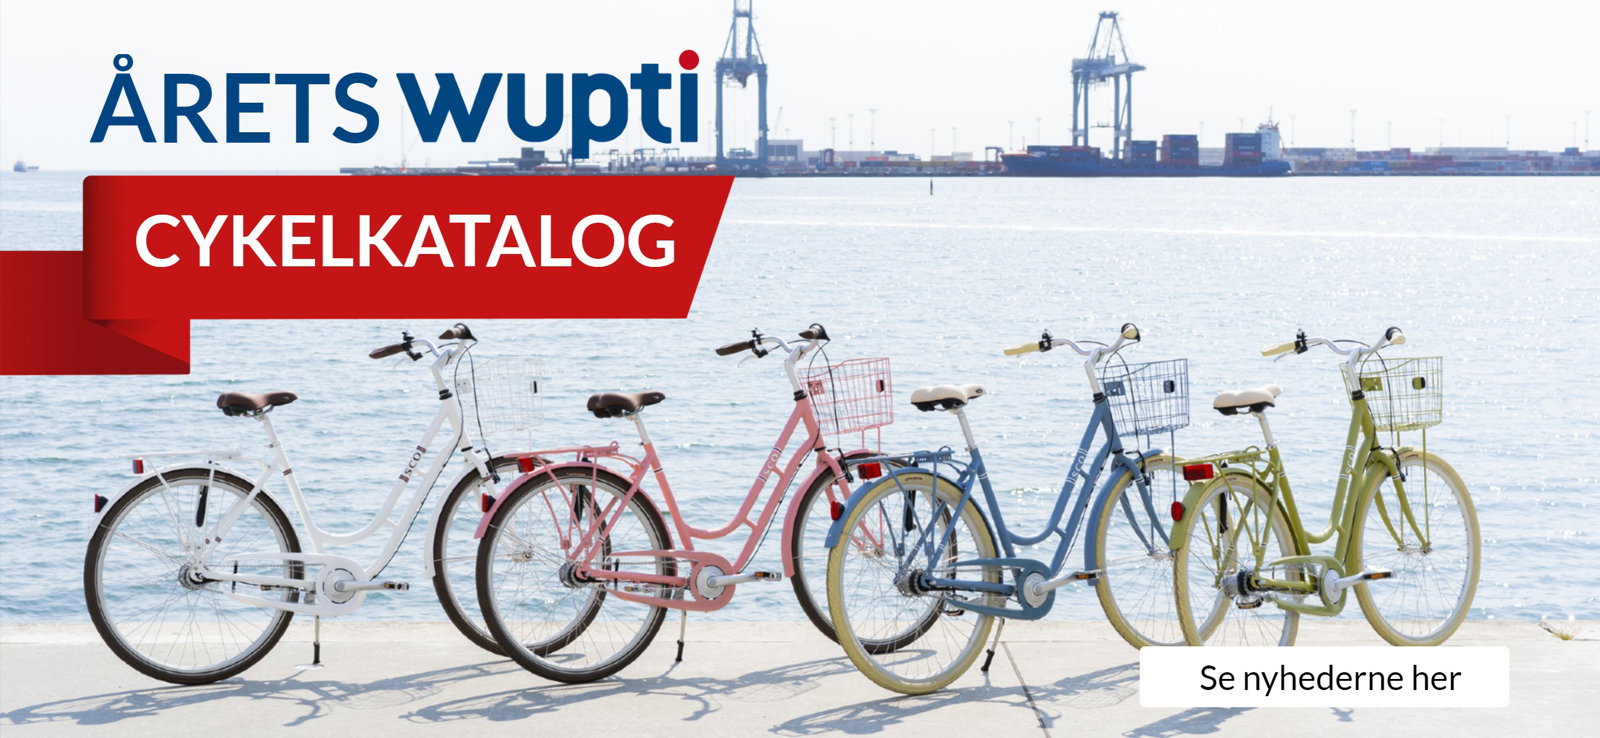 wupti.com: Årets wupti cykelkatalog landet restsalg på udgående 2020-modeller Milled